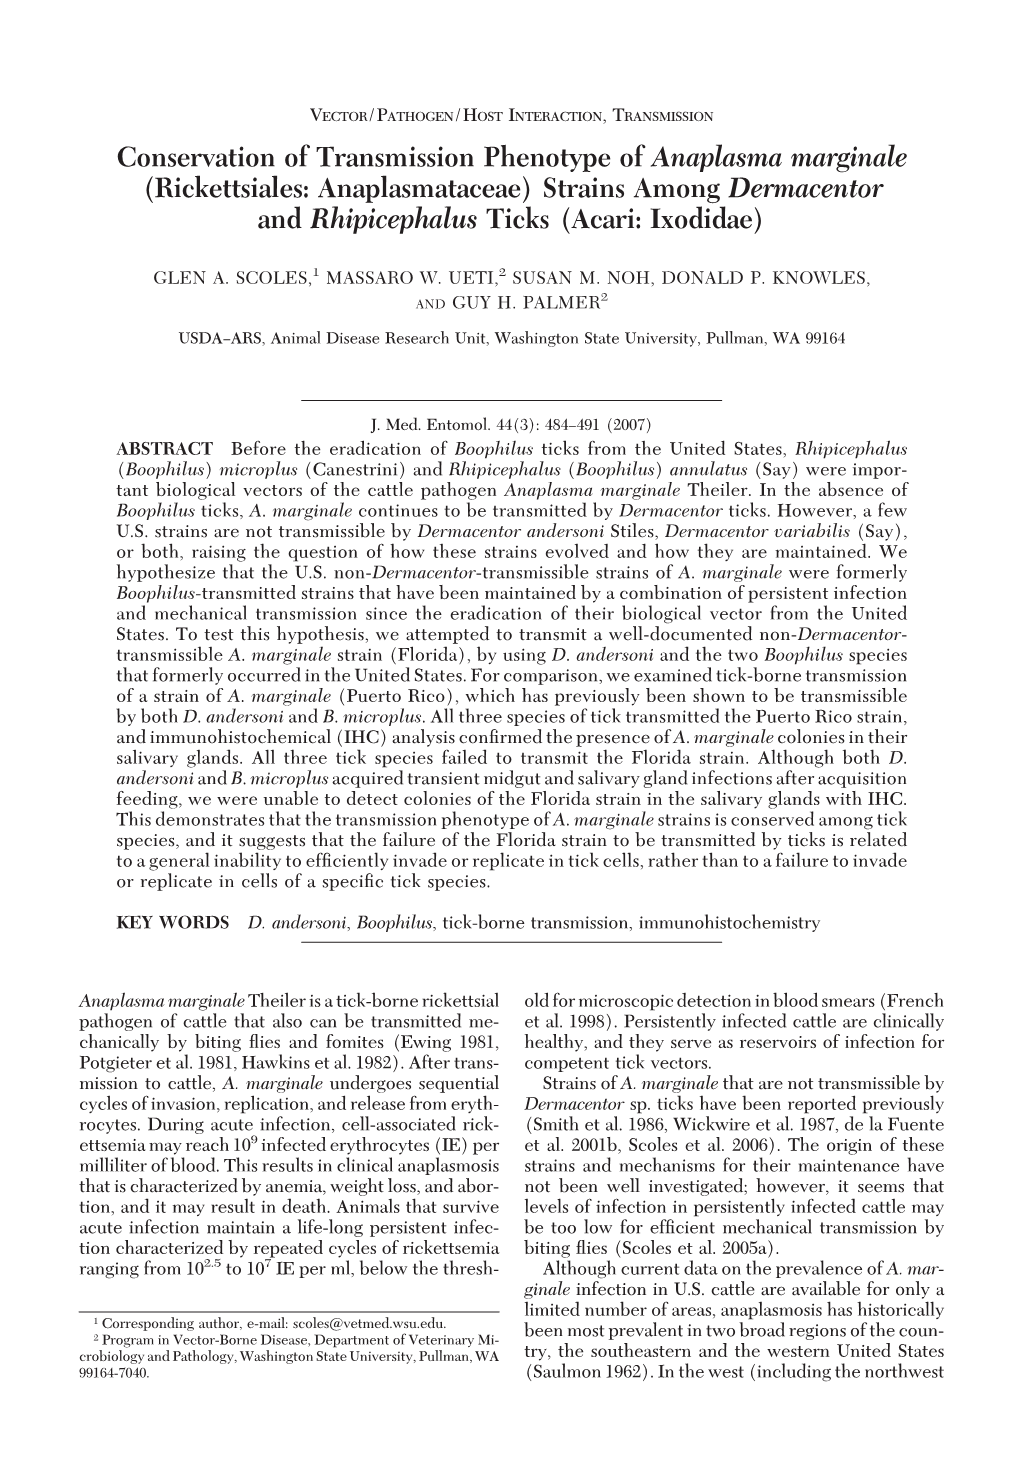 Conservation of Transmission Phenotype of Anaplasma Marginale (Rickettsiales: Anaplasmataceae) Strains Among Dermacentor and Rhipicephalus Ticks (Acari: Ixodidae)